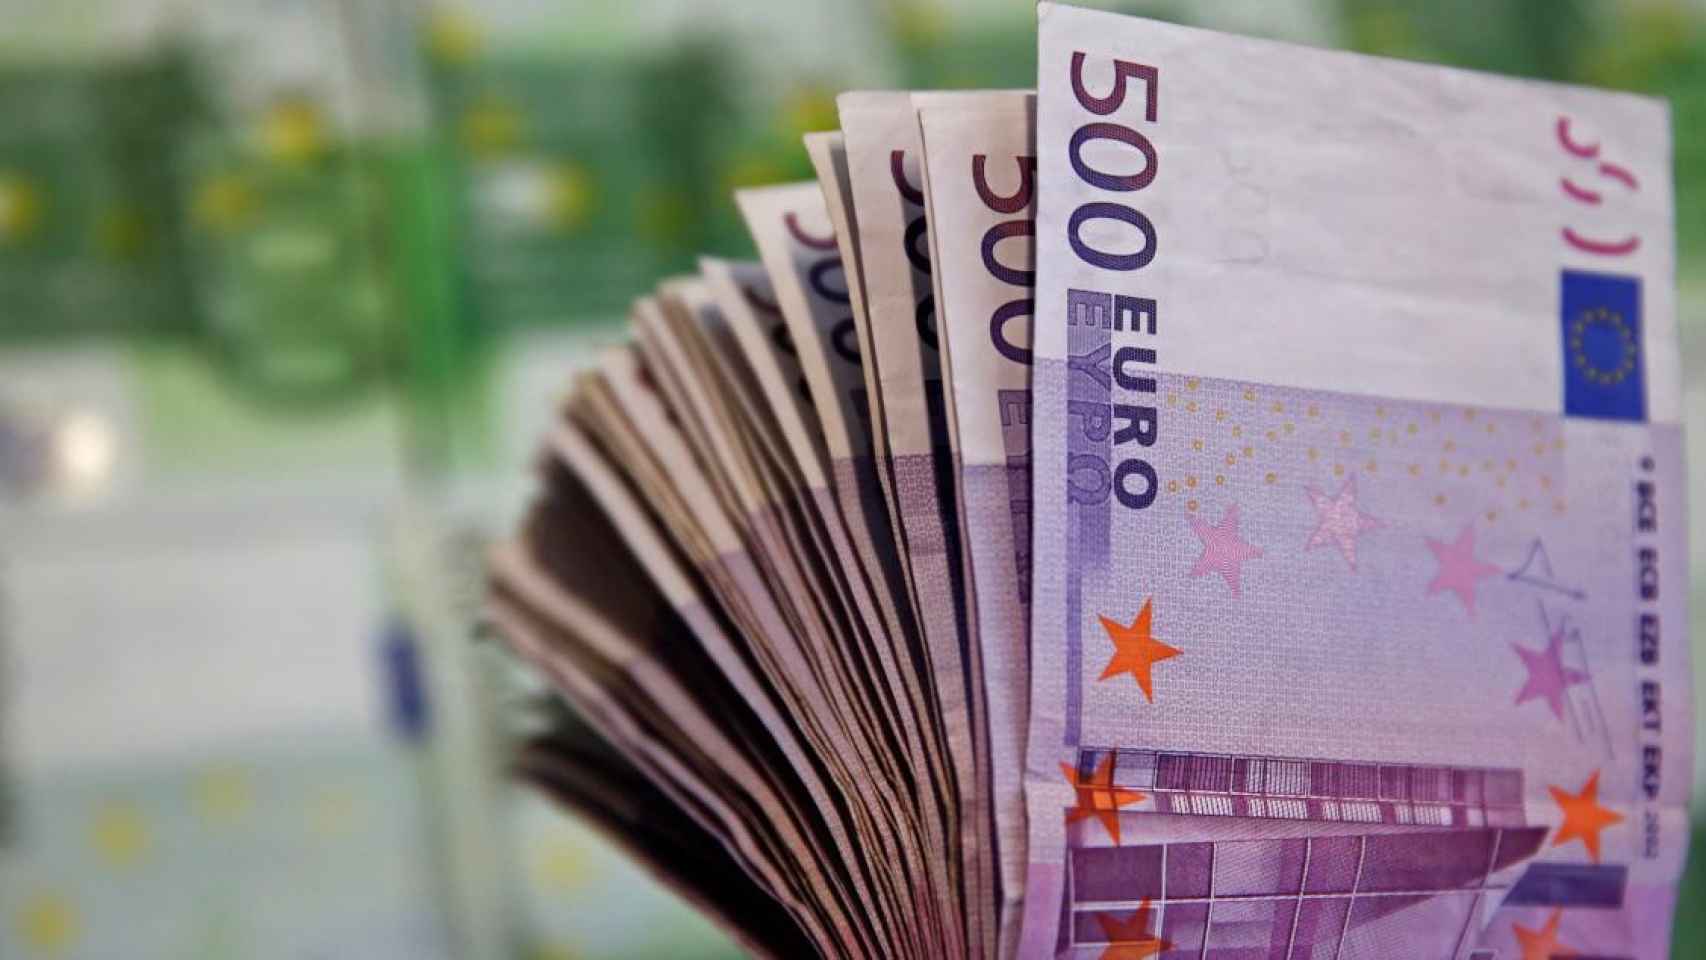 Billetes de 100 y de 500 euros / EUROPA PRESS